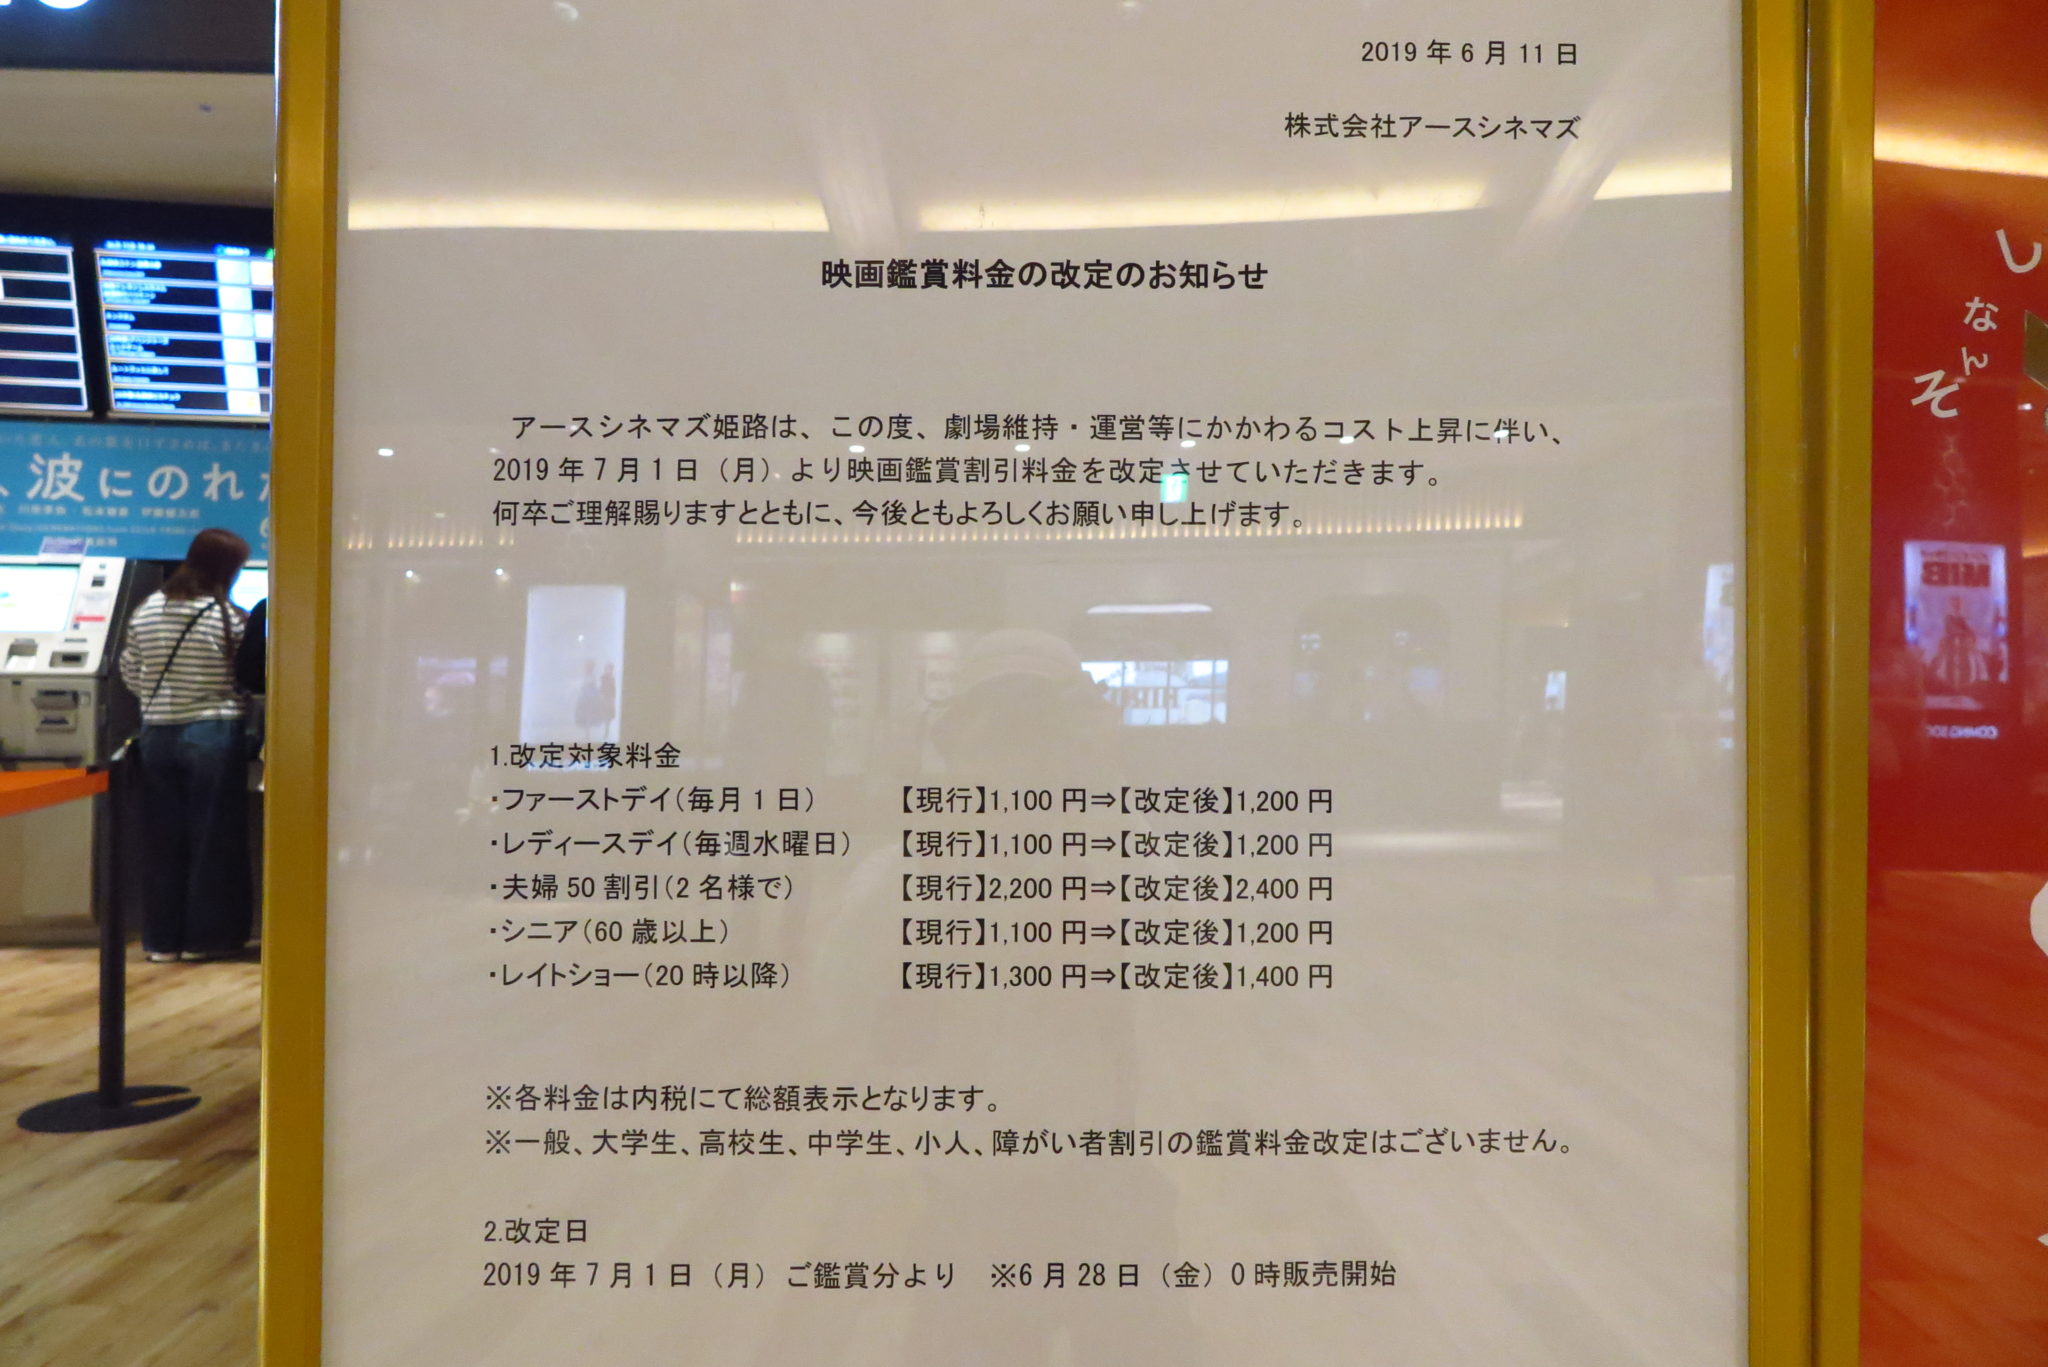 アースシネマズ姫路の映画鑑賞割引料金が７月１日より改定されるみたい 姫路の種